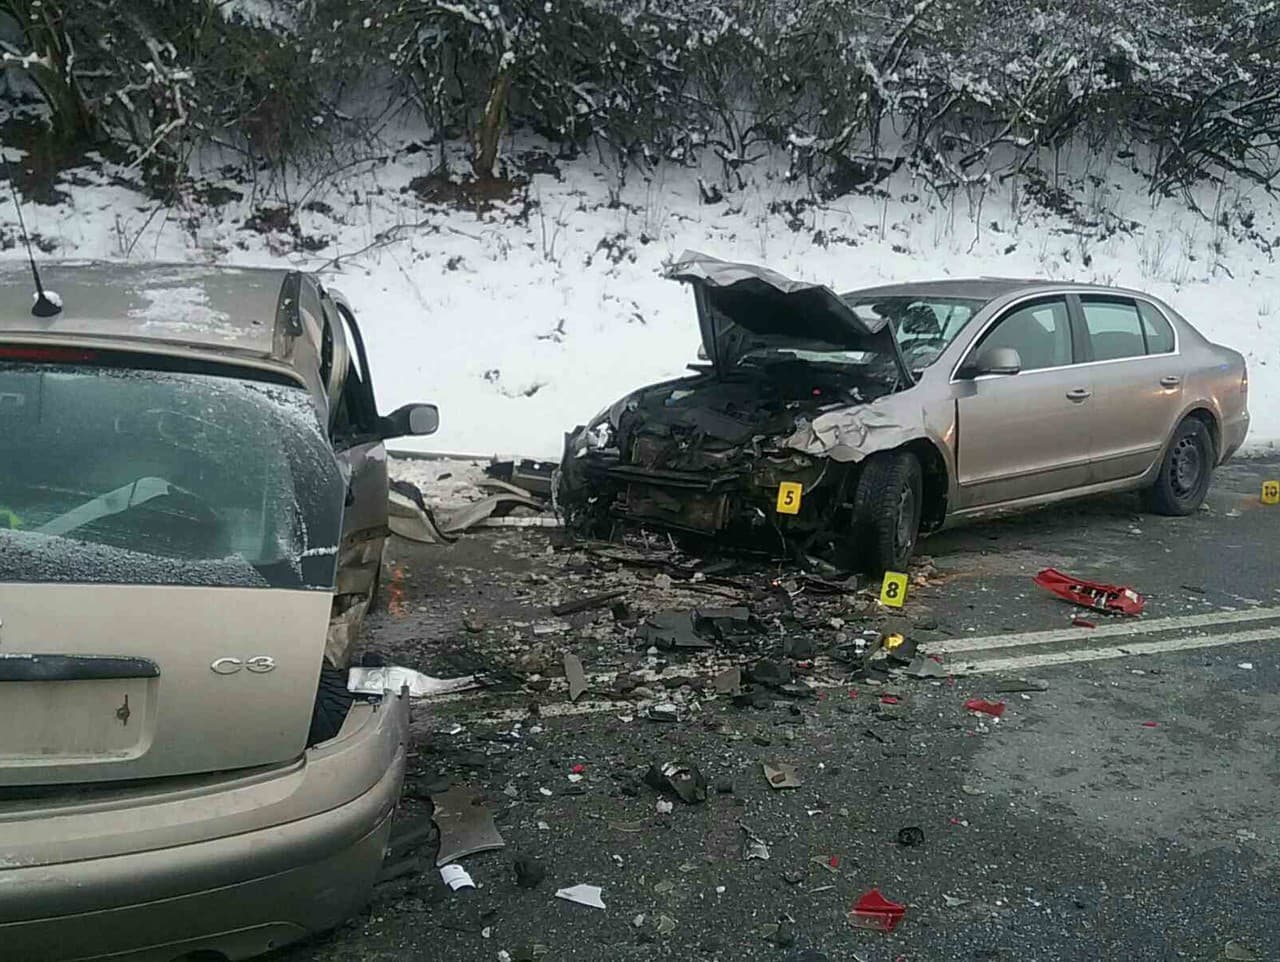 Dopravná nehoda 2 osobných vozidiel